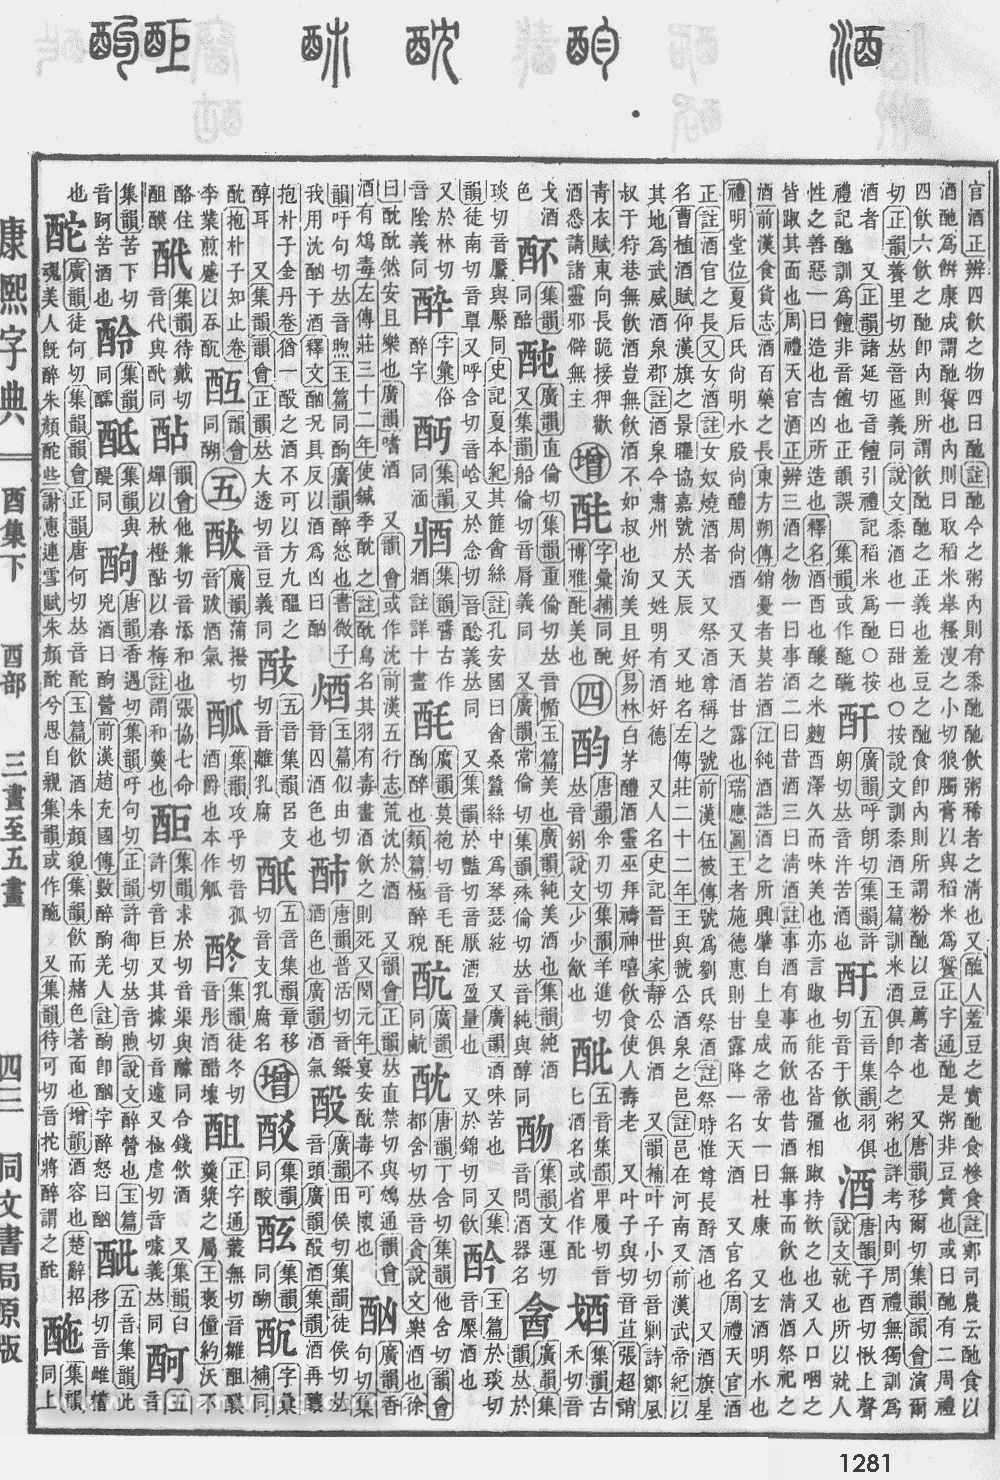 康熙字典掃描版第1281頁